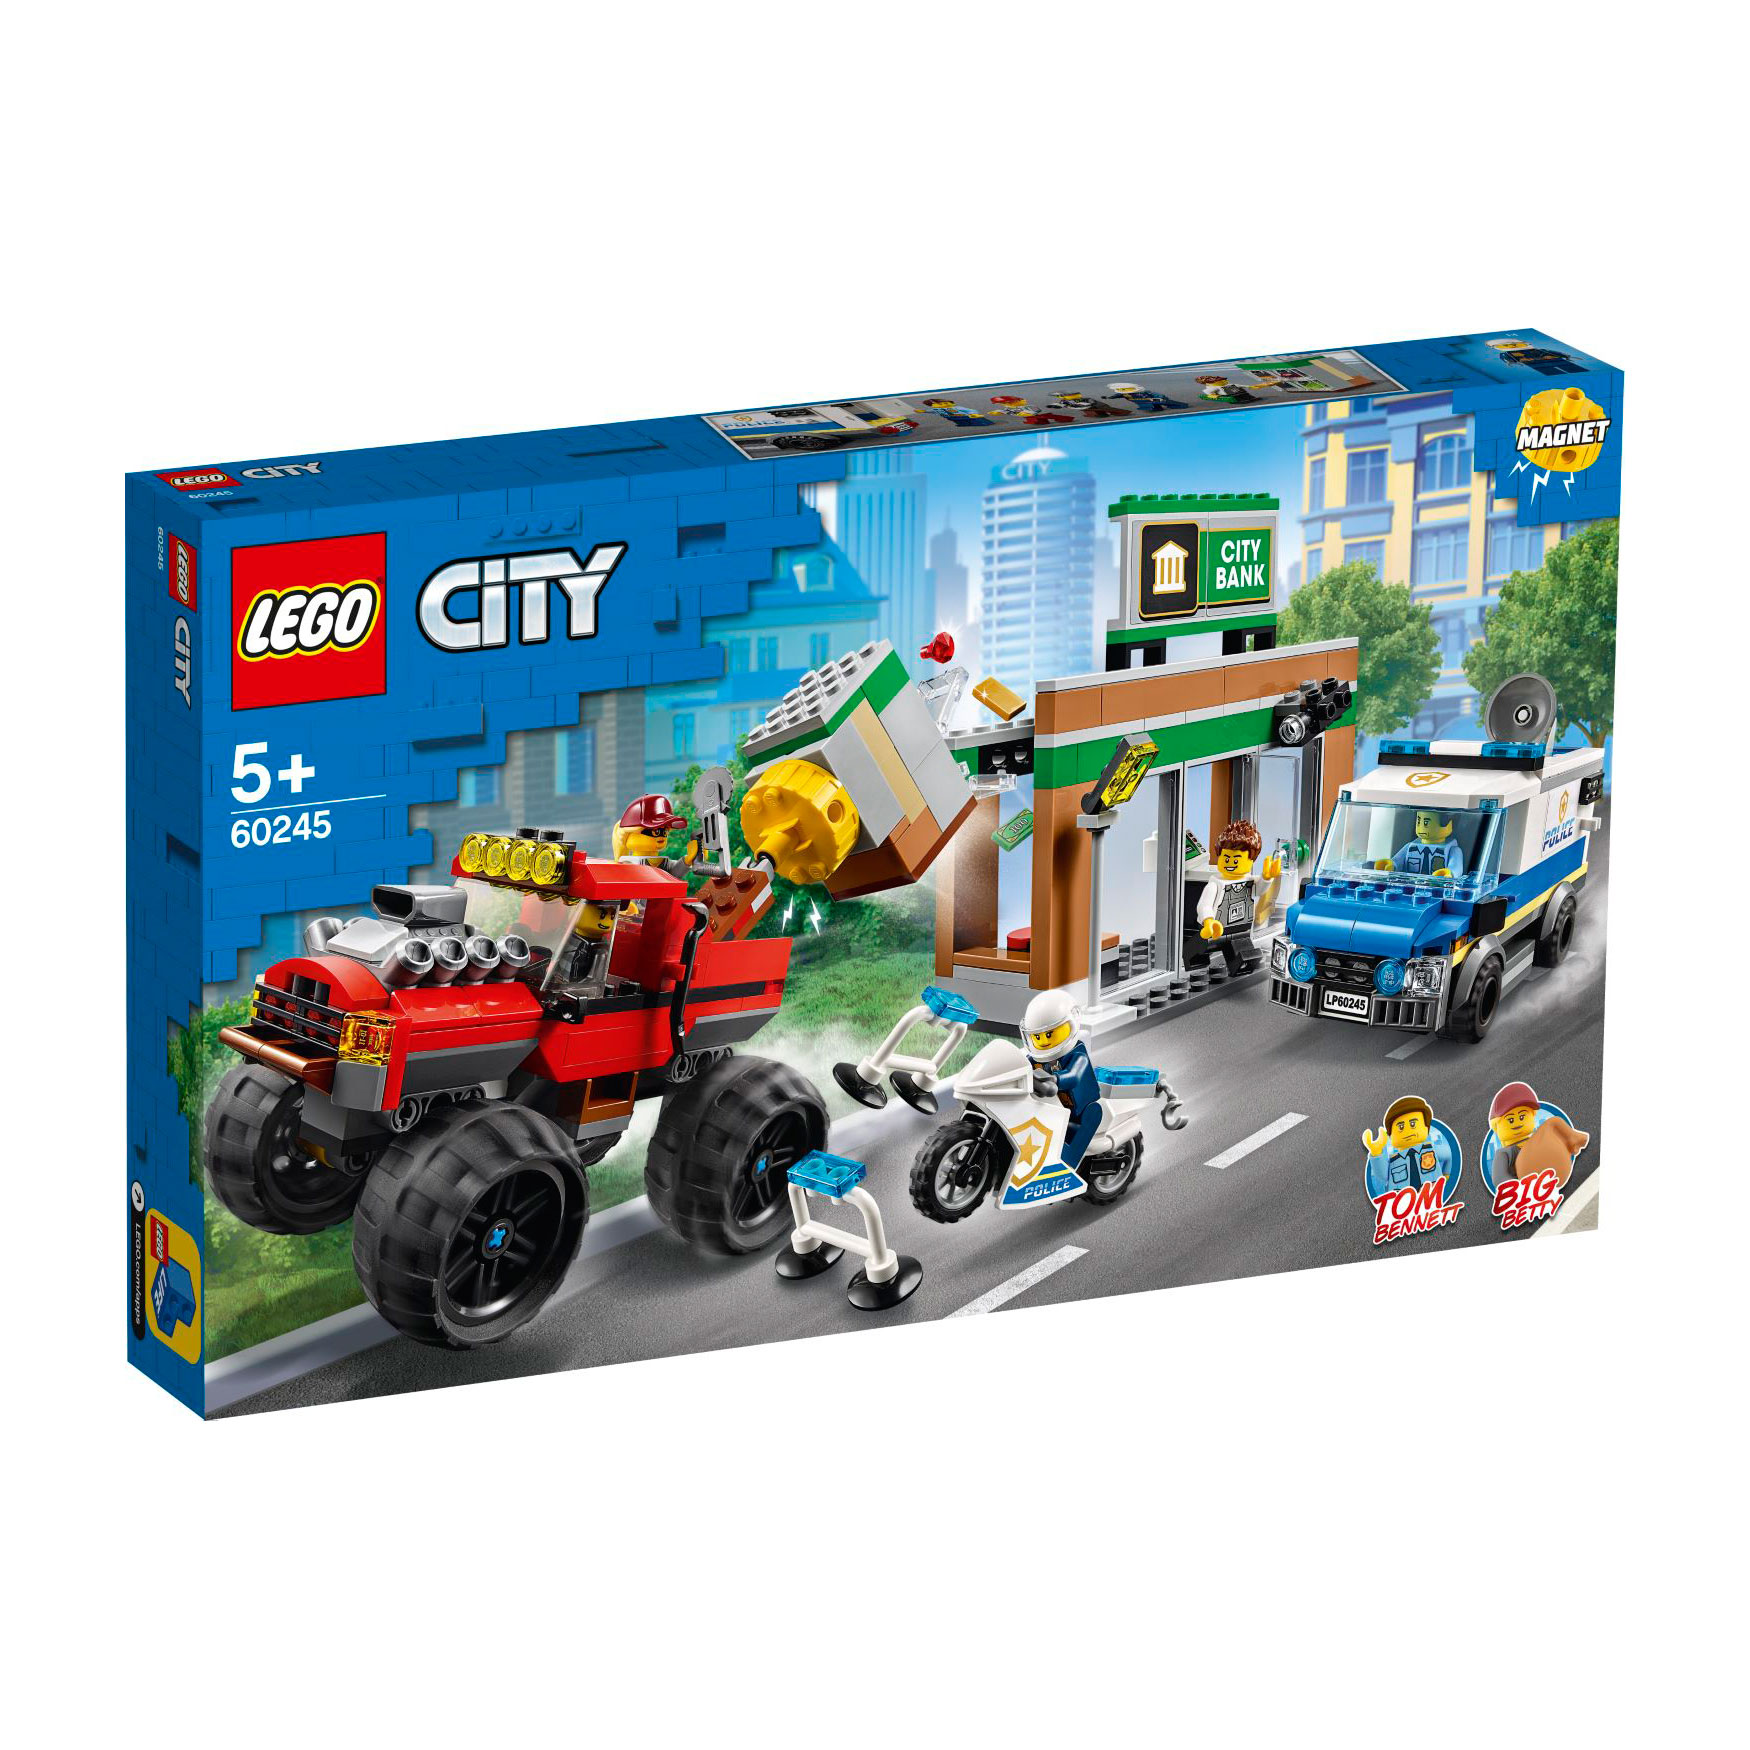 LEGO® CITY 60245 Raubüberfall mit dem Monster-Truck günstig kaufen ...